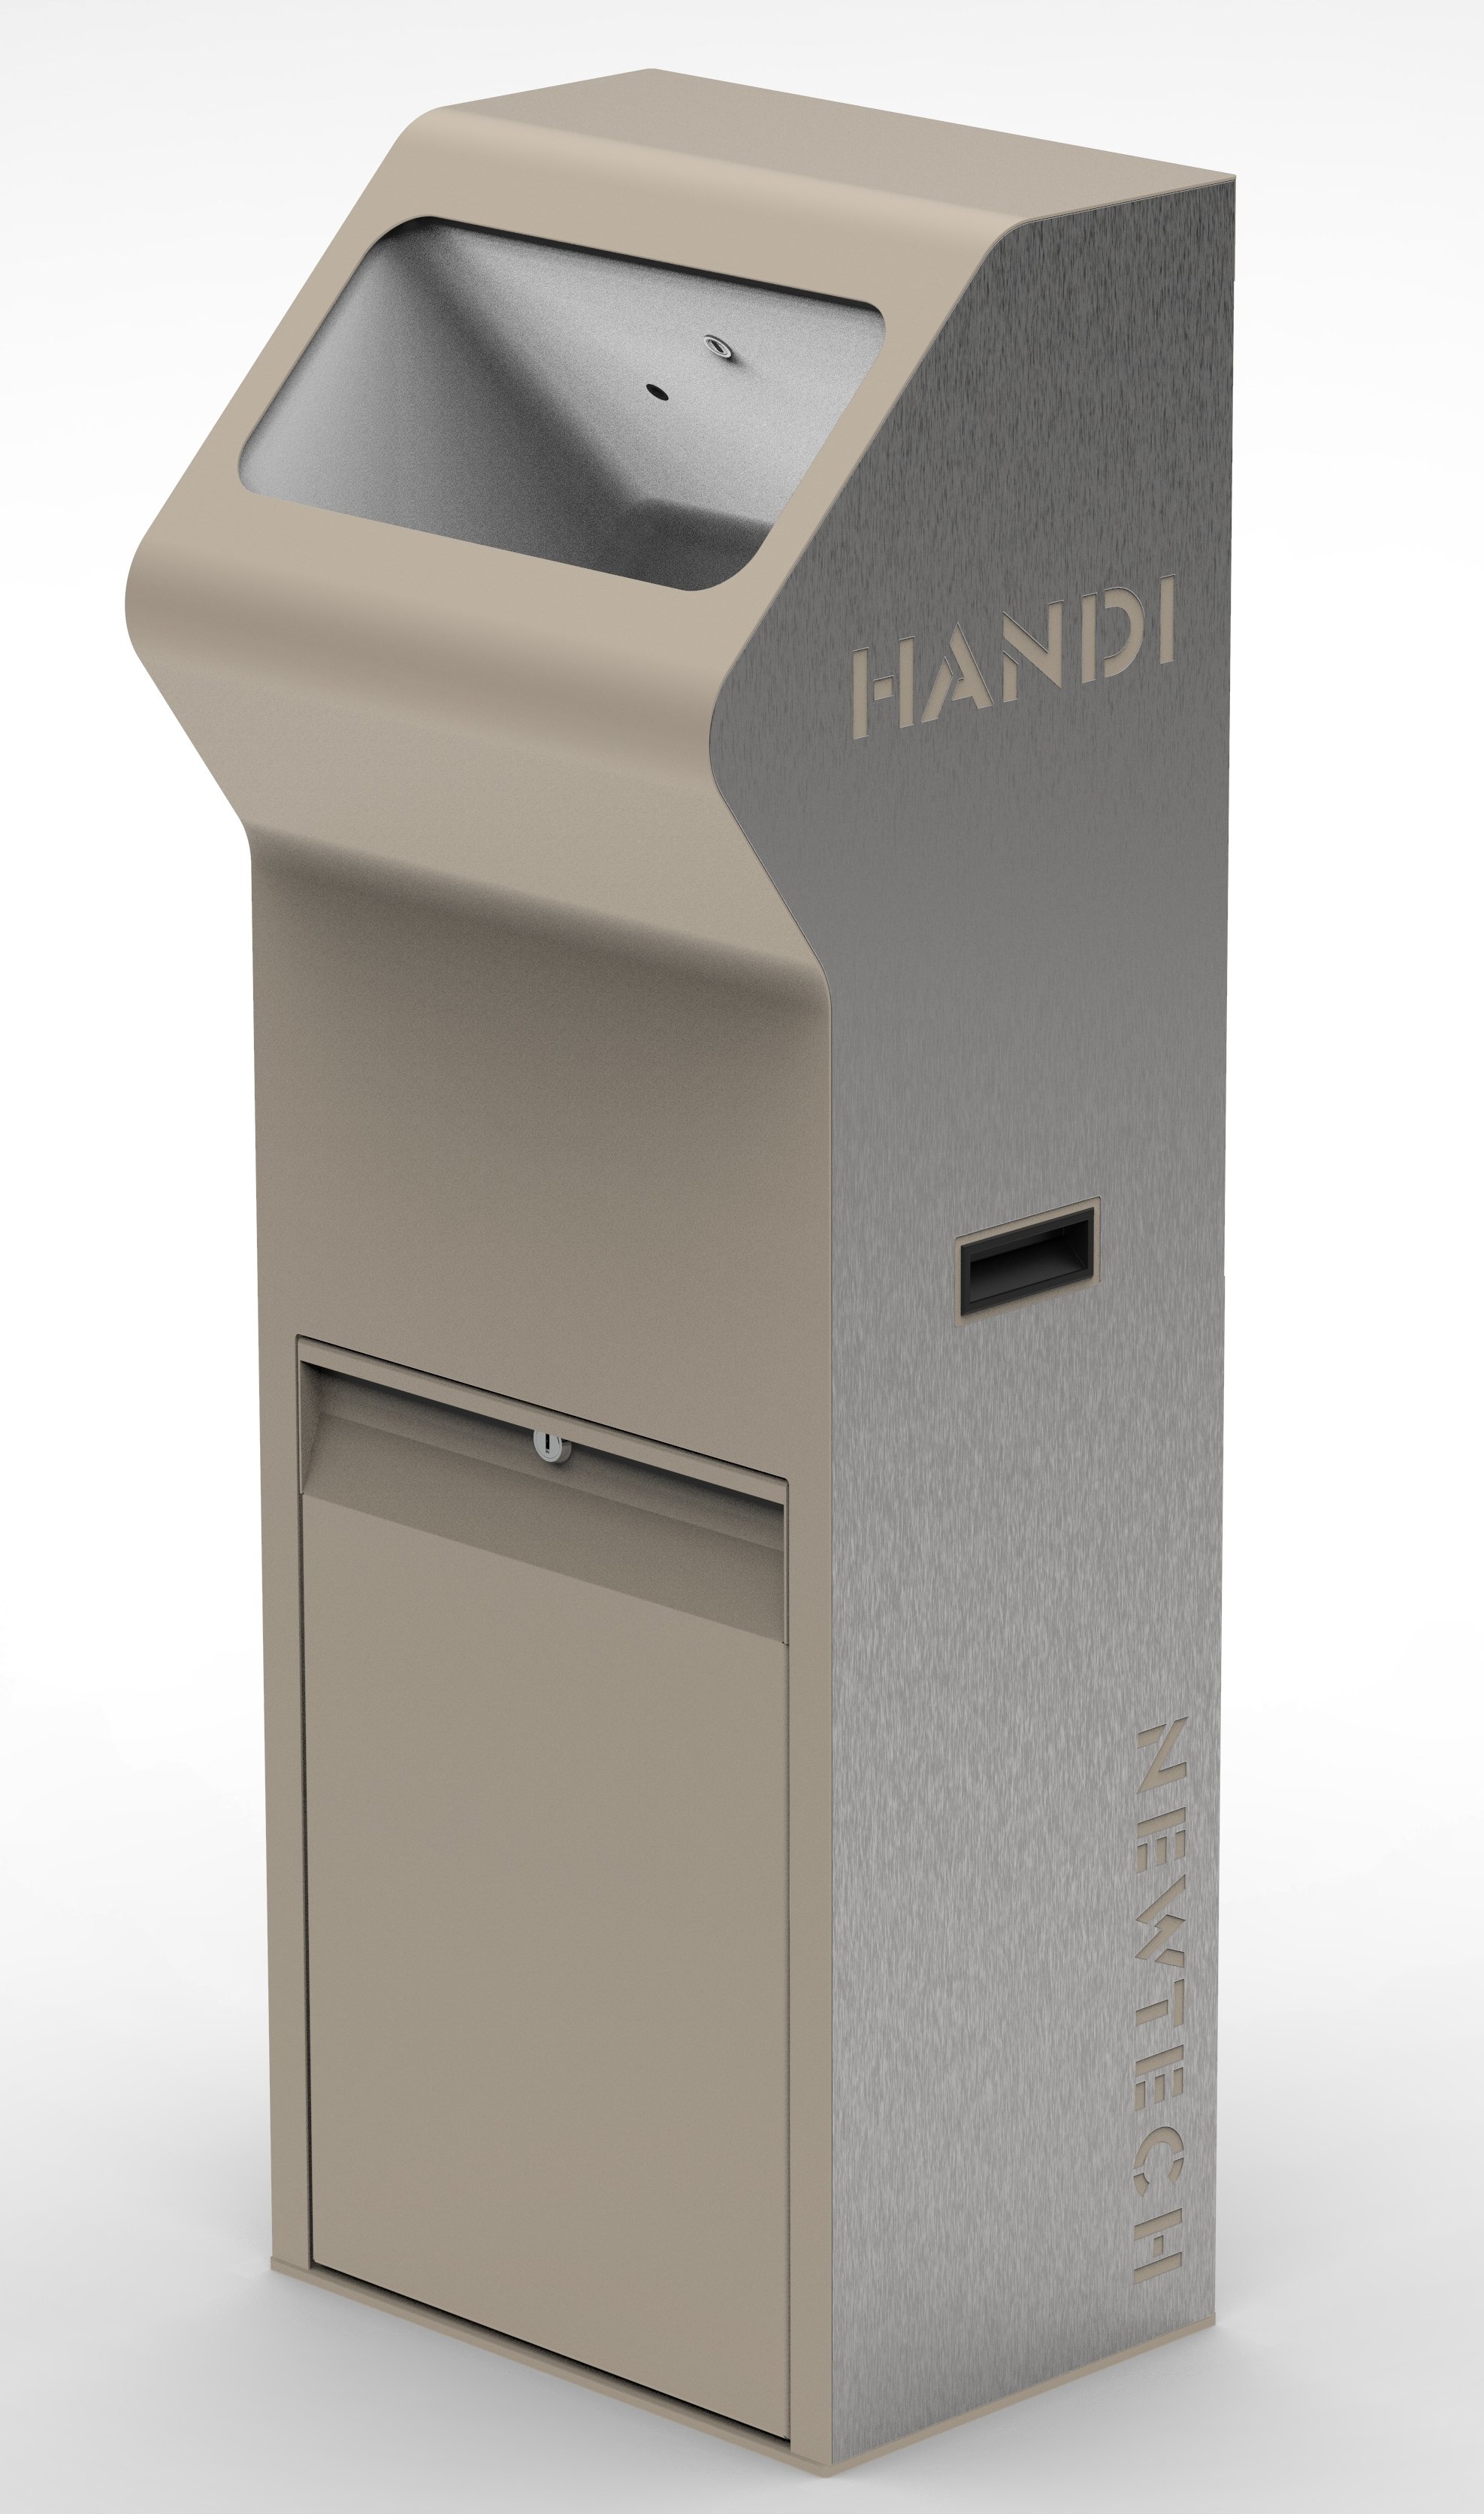 Автомат для дезинфекции рук <strong>HANDI</strong> напольный